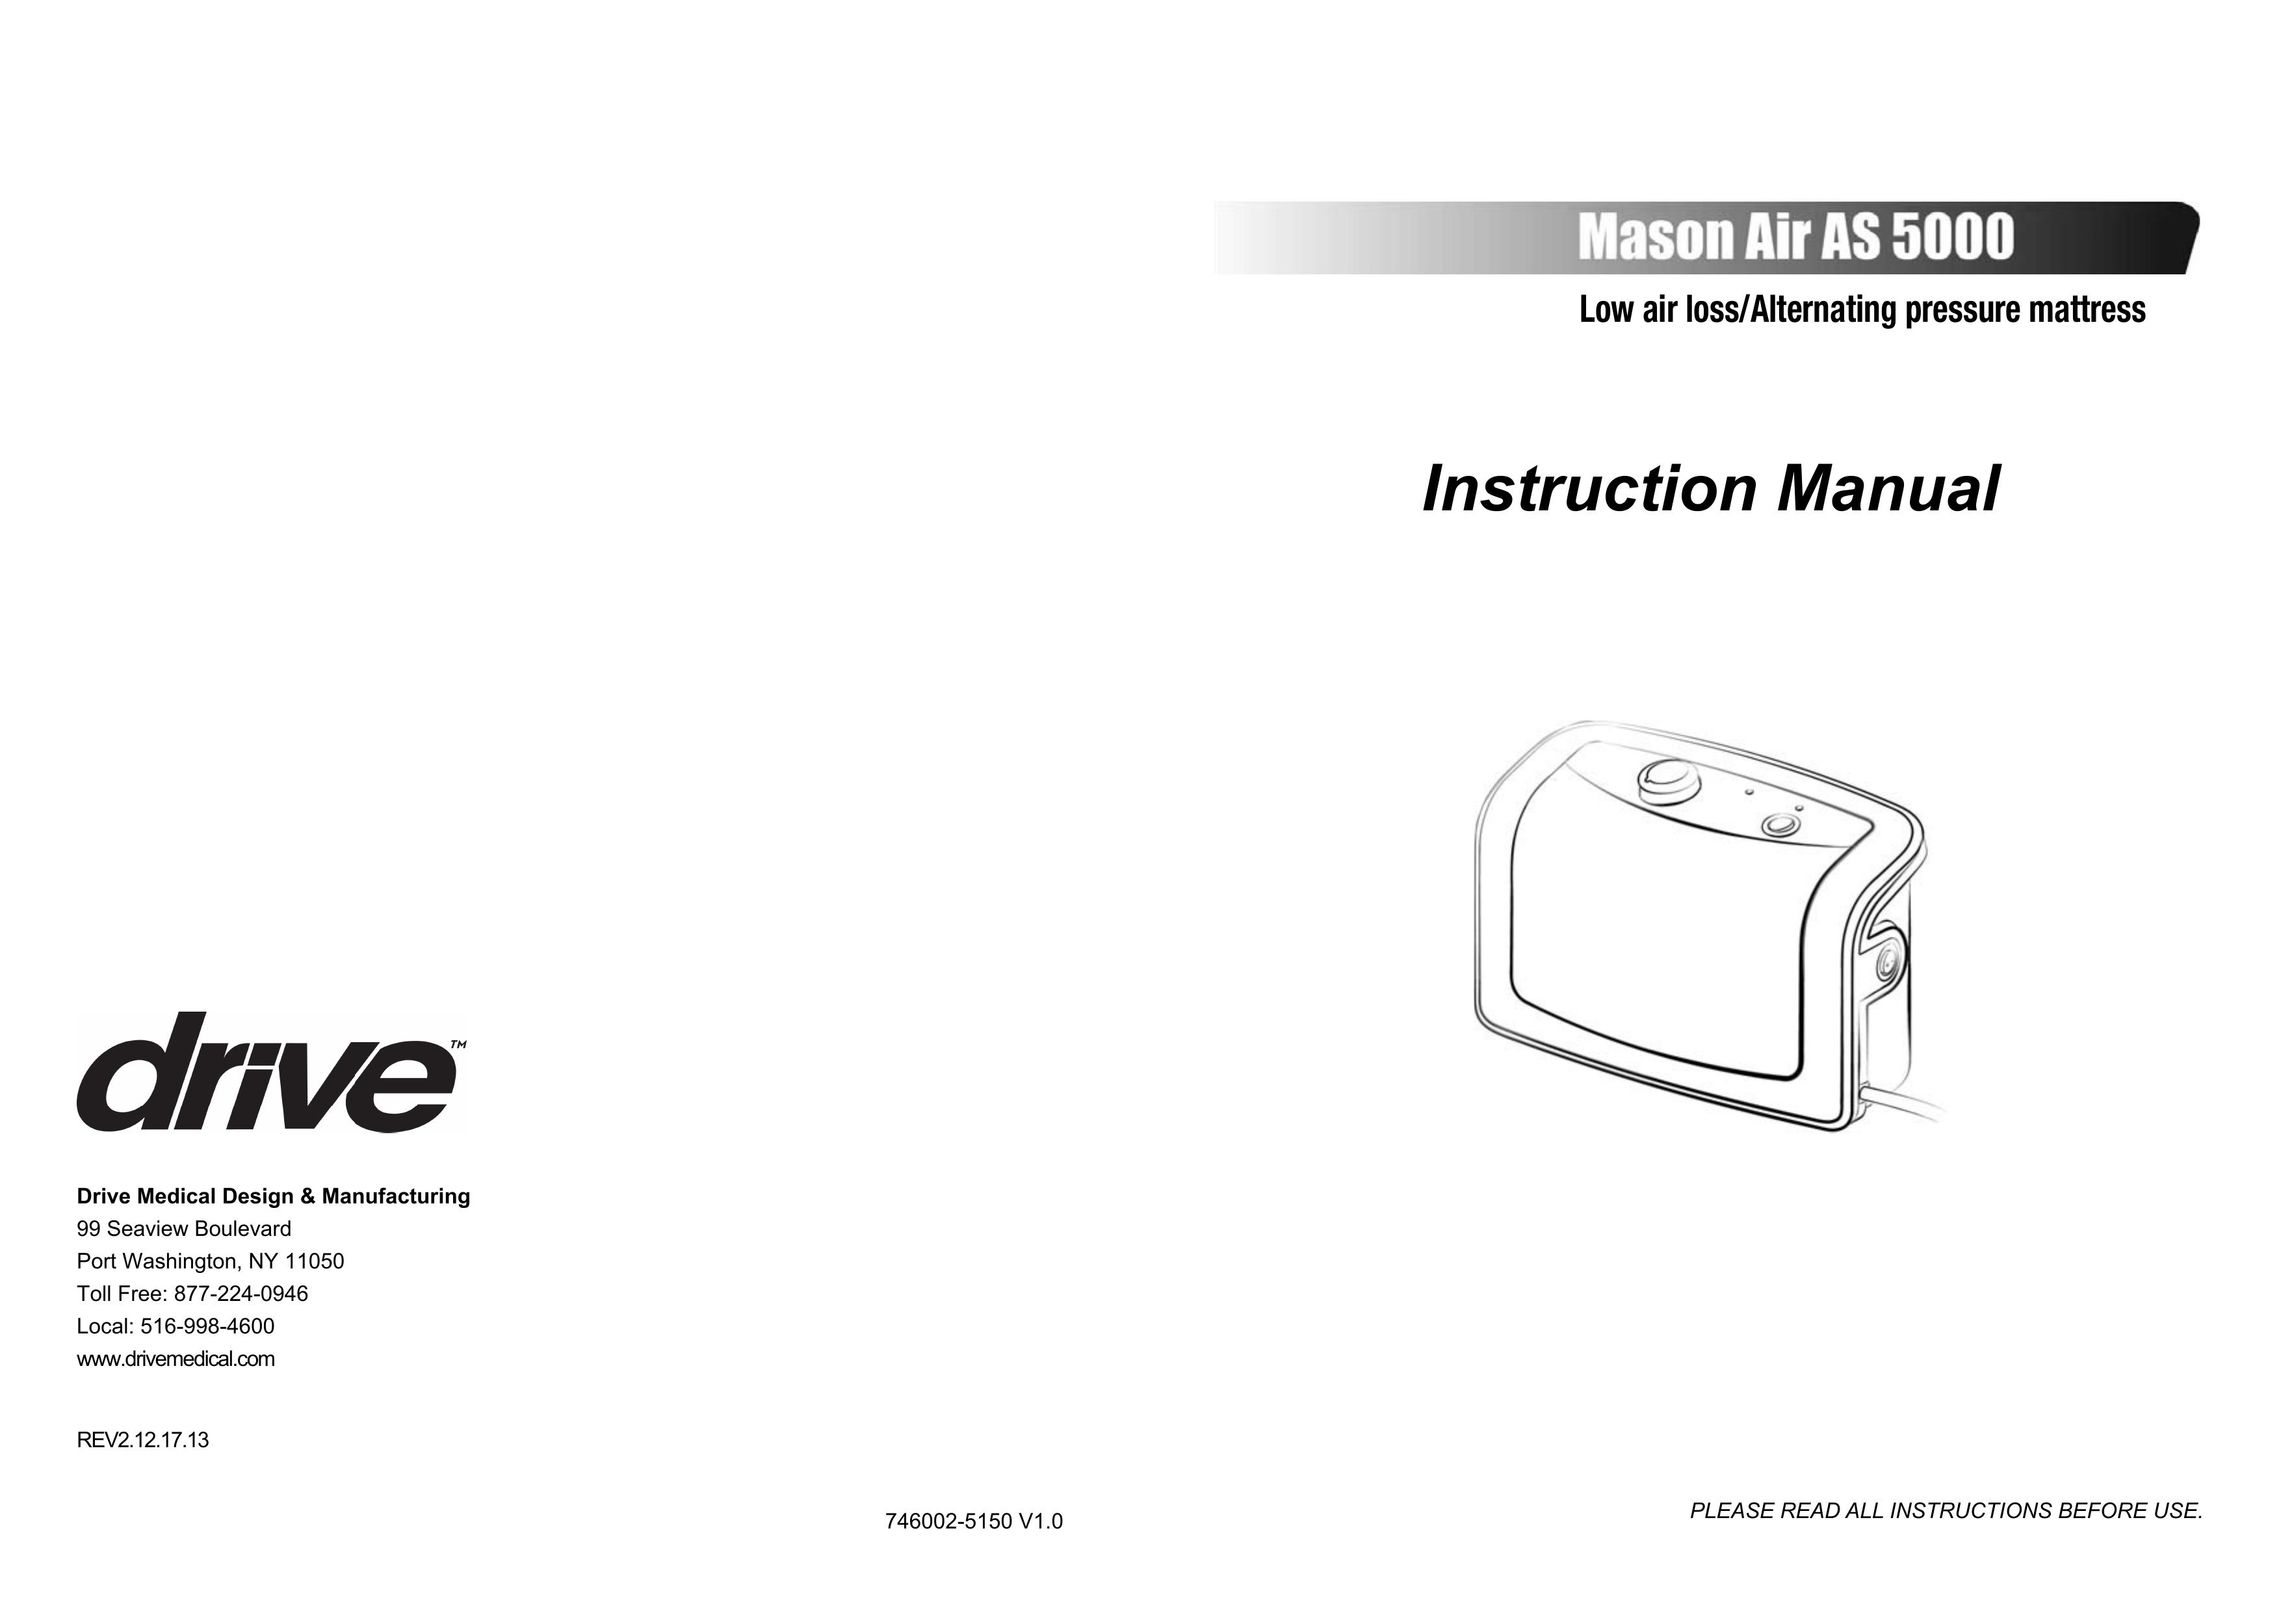 Drive Medical Design AS 5000 Camping Equipment User Manual